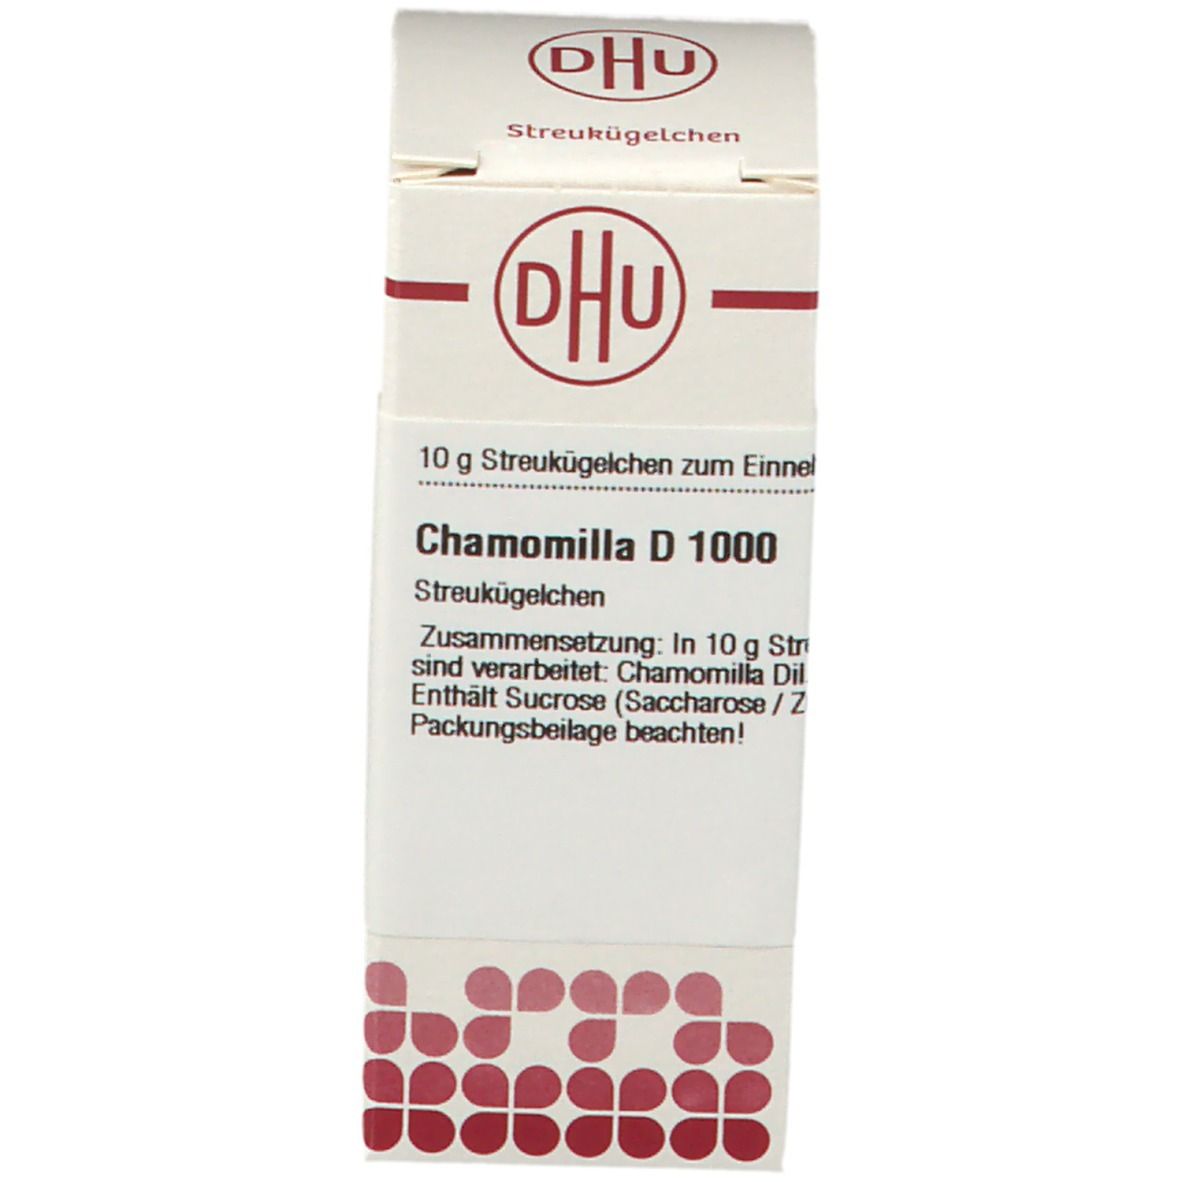 DHU Chamomilla D1000